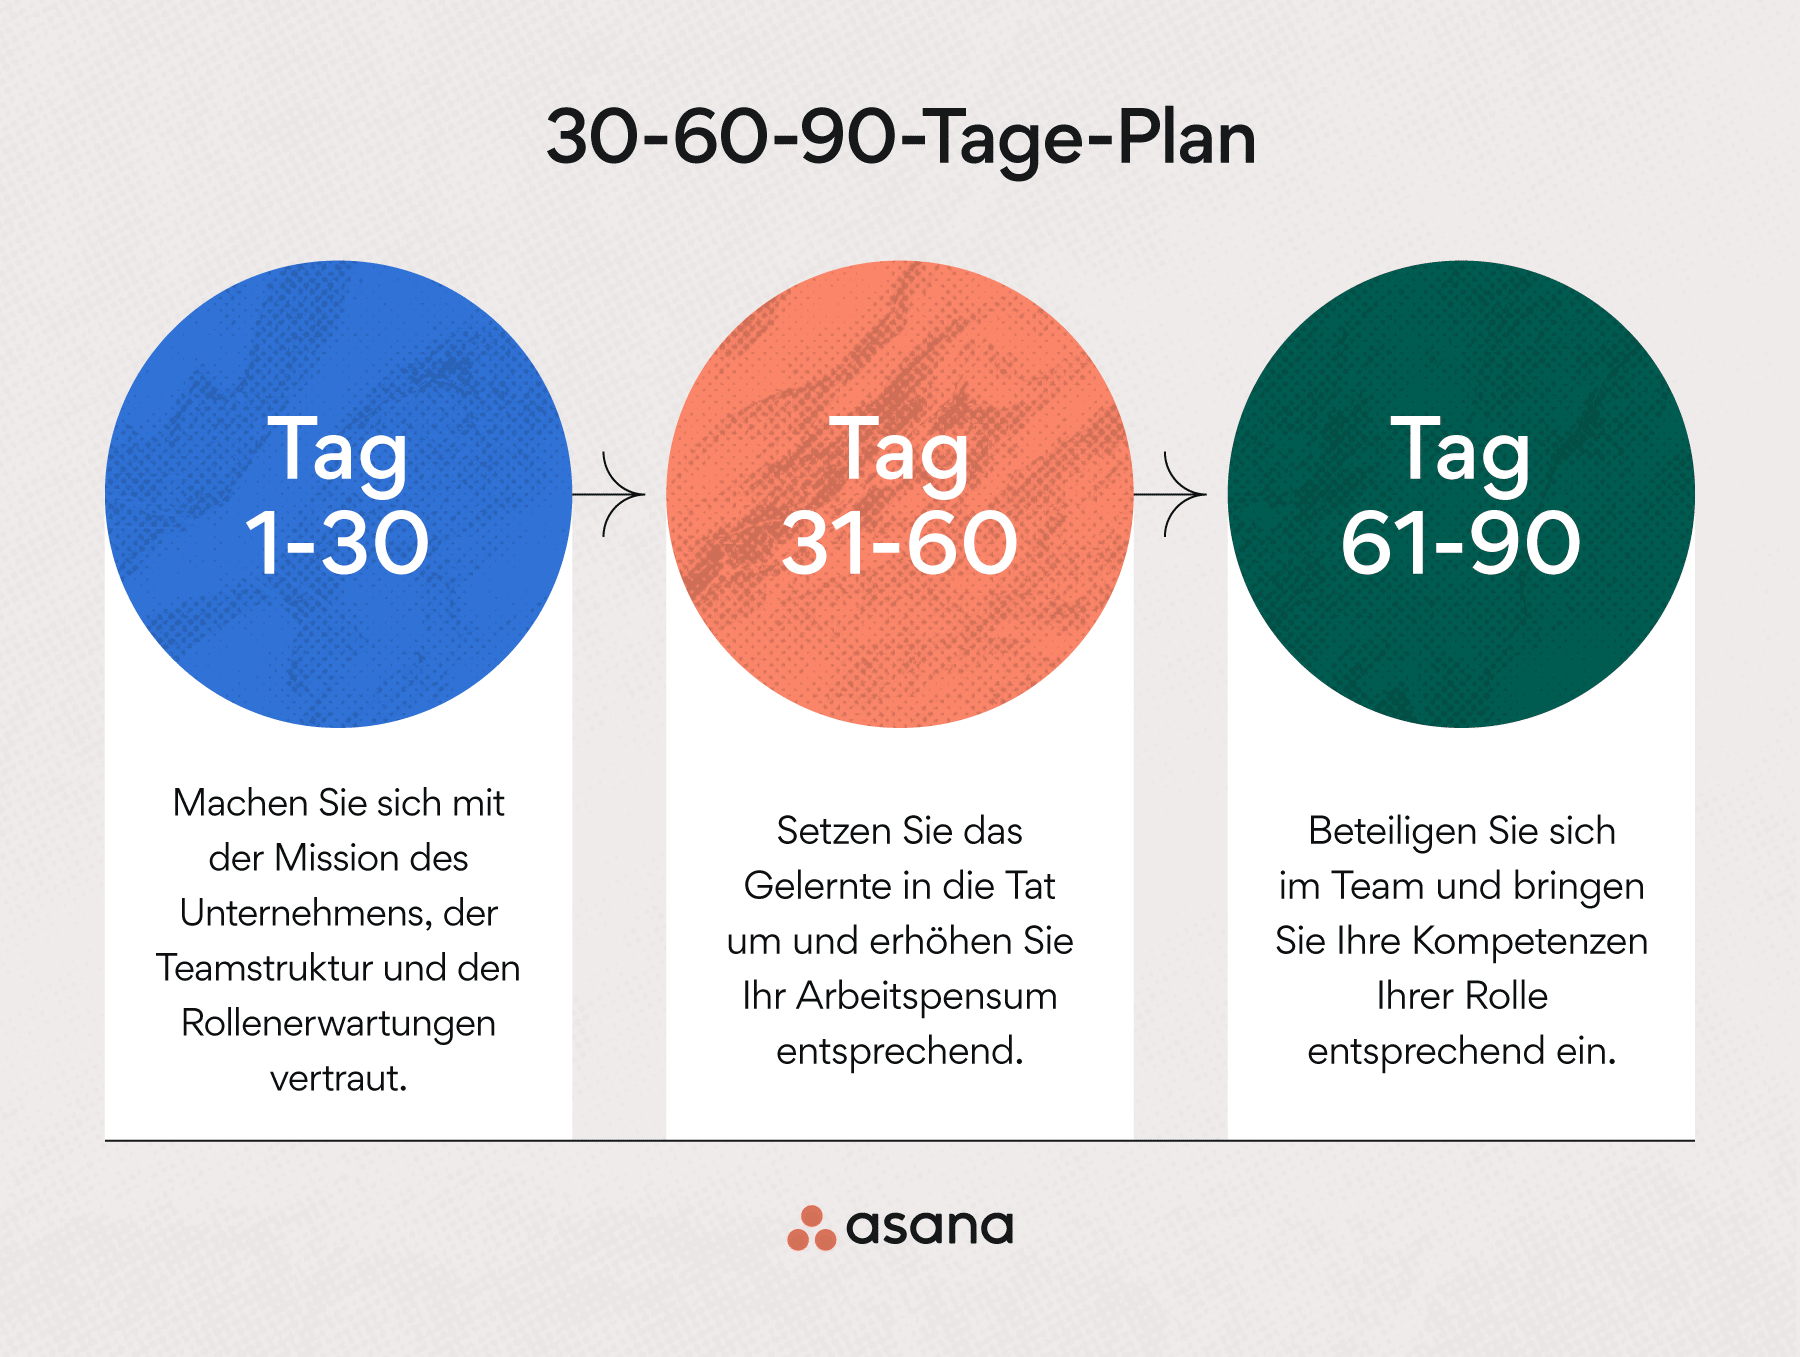 Was ist ein 30-60-90-Tage-Plan?